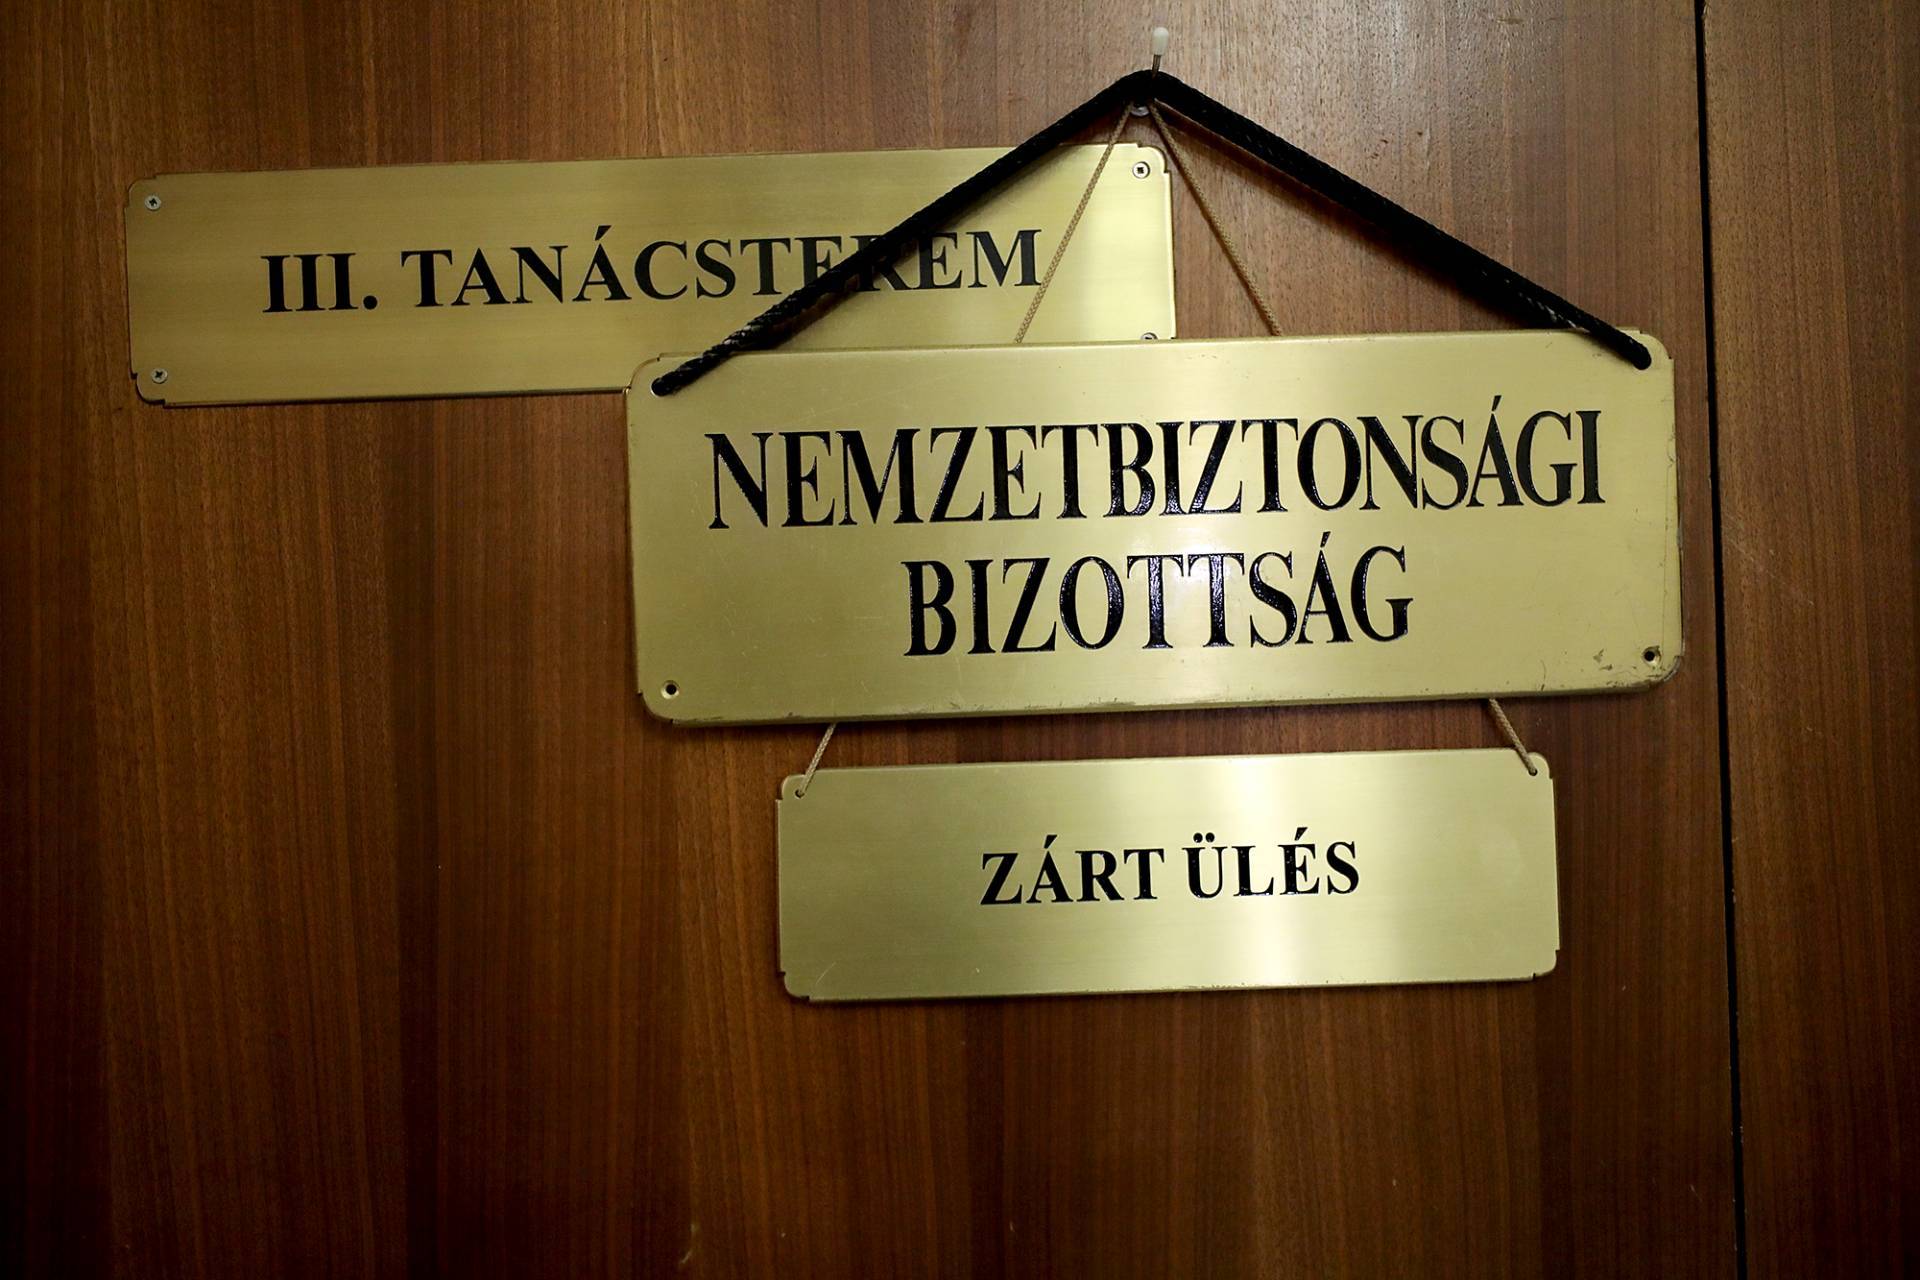 राष्ट्रीय सुरक्षा समिति हंगरी की संसद